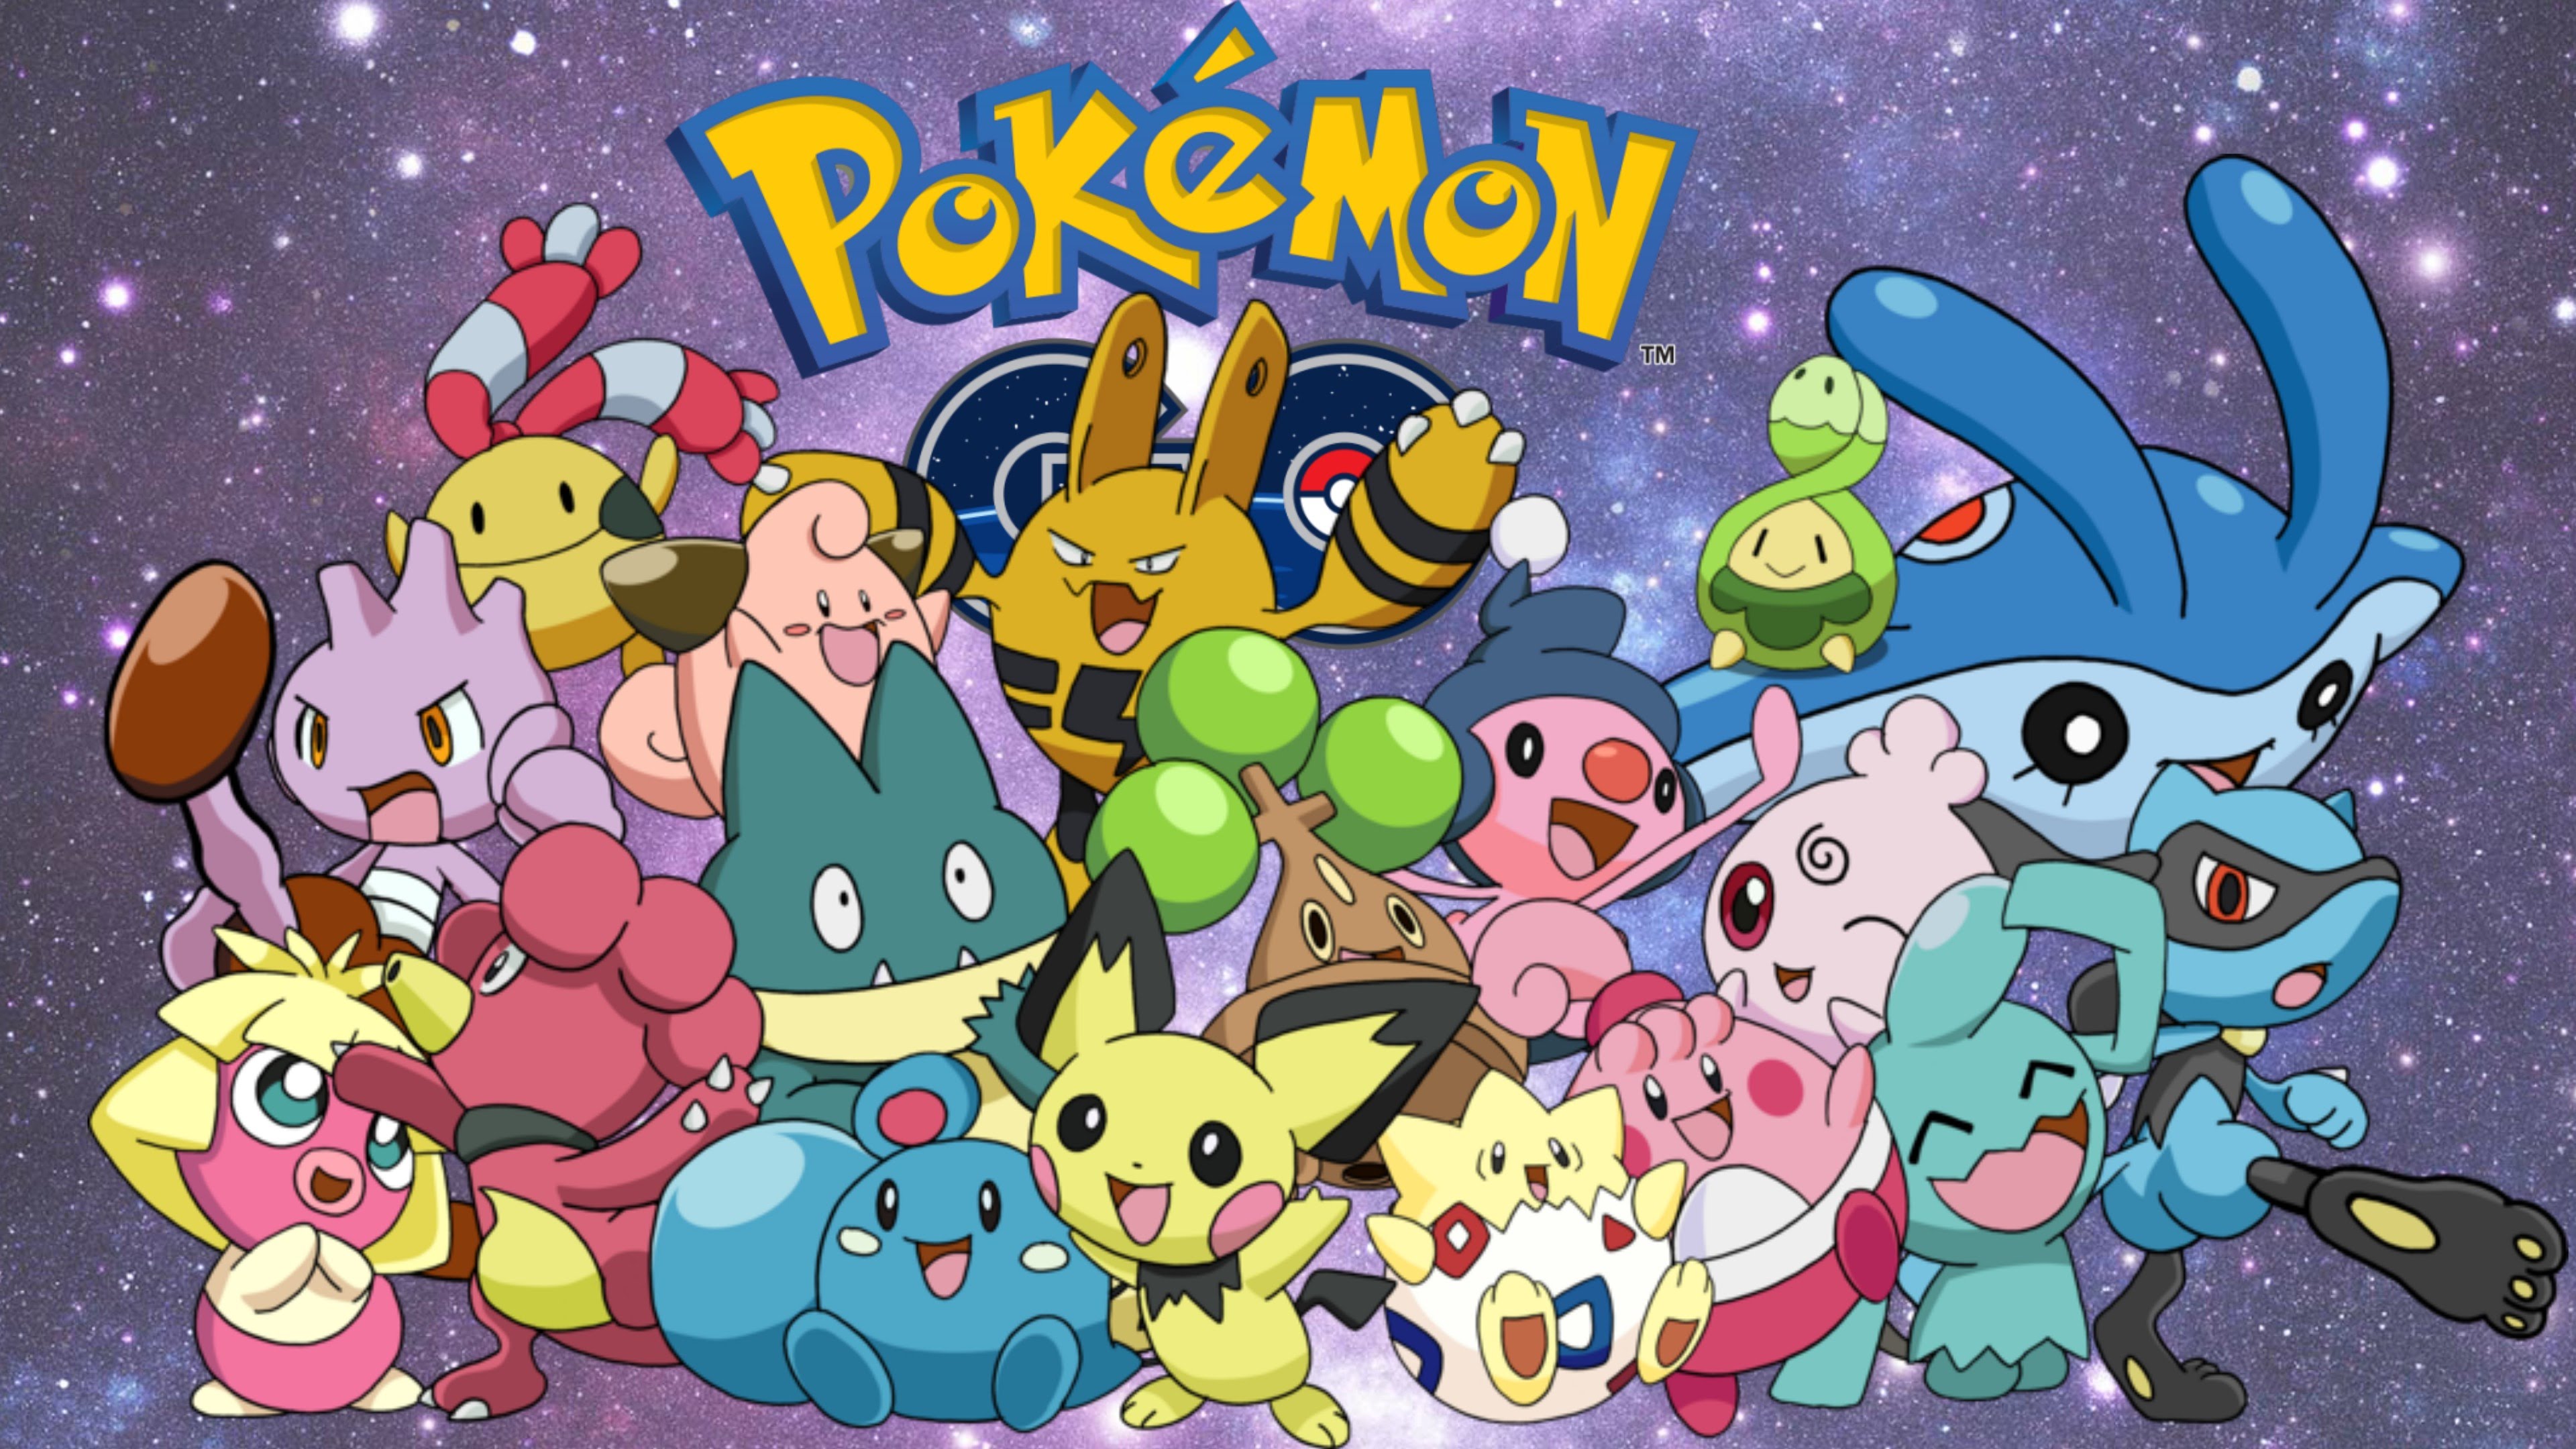 Pokemon Go Generation 2 Update Details, Details, Details - Pokemon Baby Pokemon Go , HD Wallpaper & Backgrounds